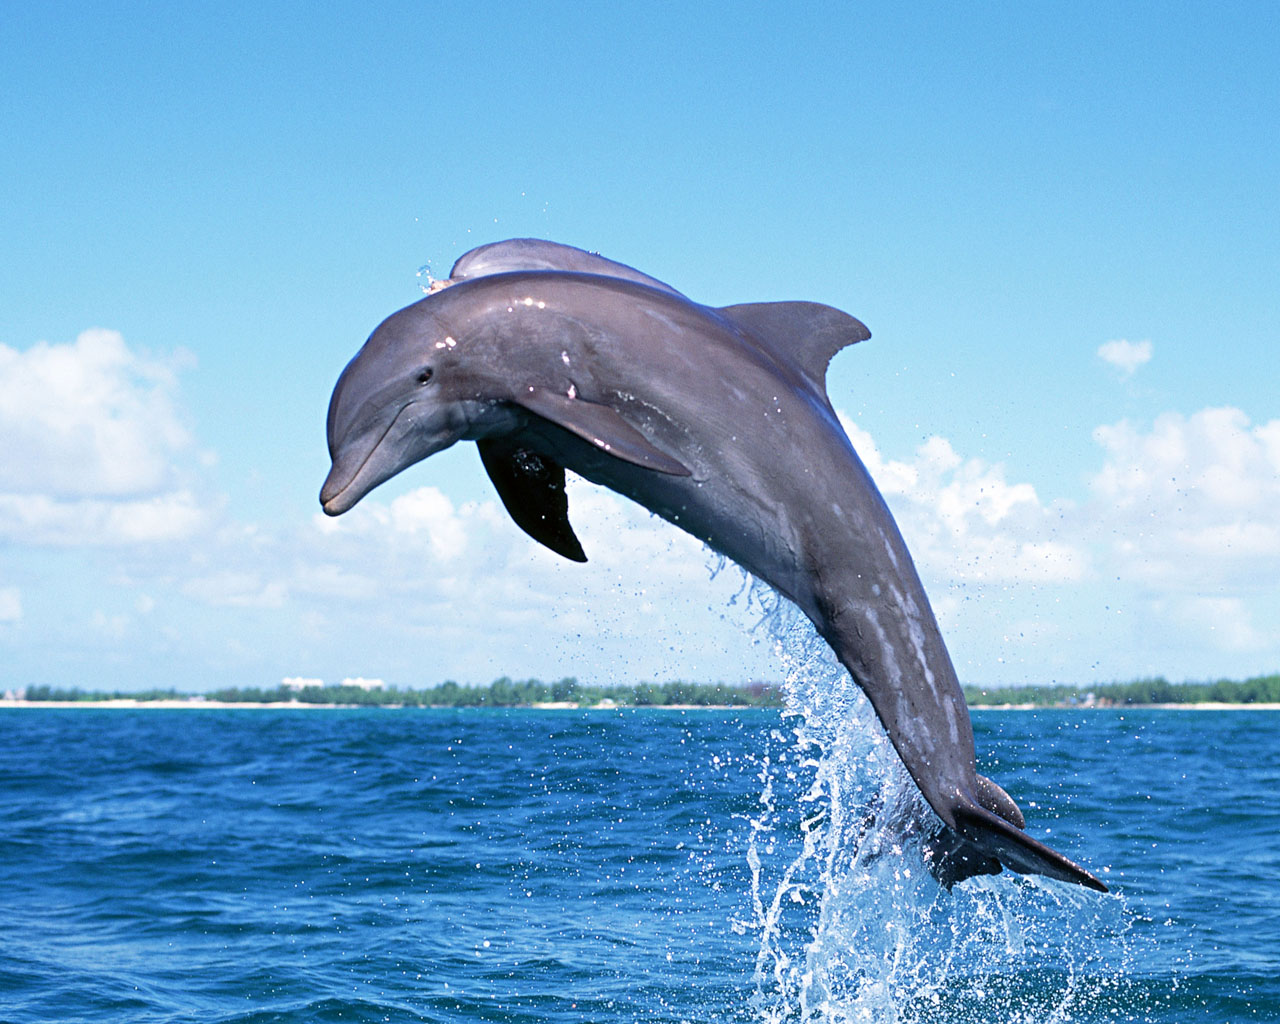 蓝天白云下的纯净海洋中海豚跃出水面特写